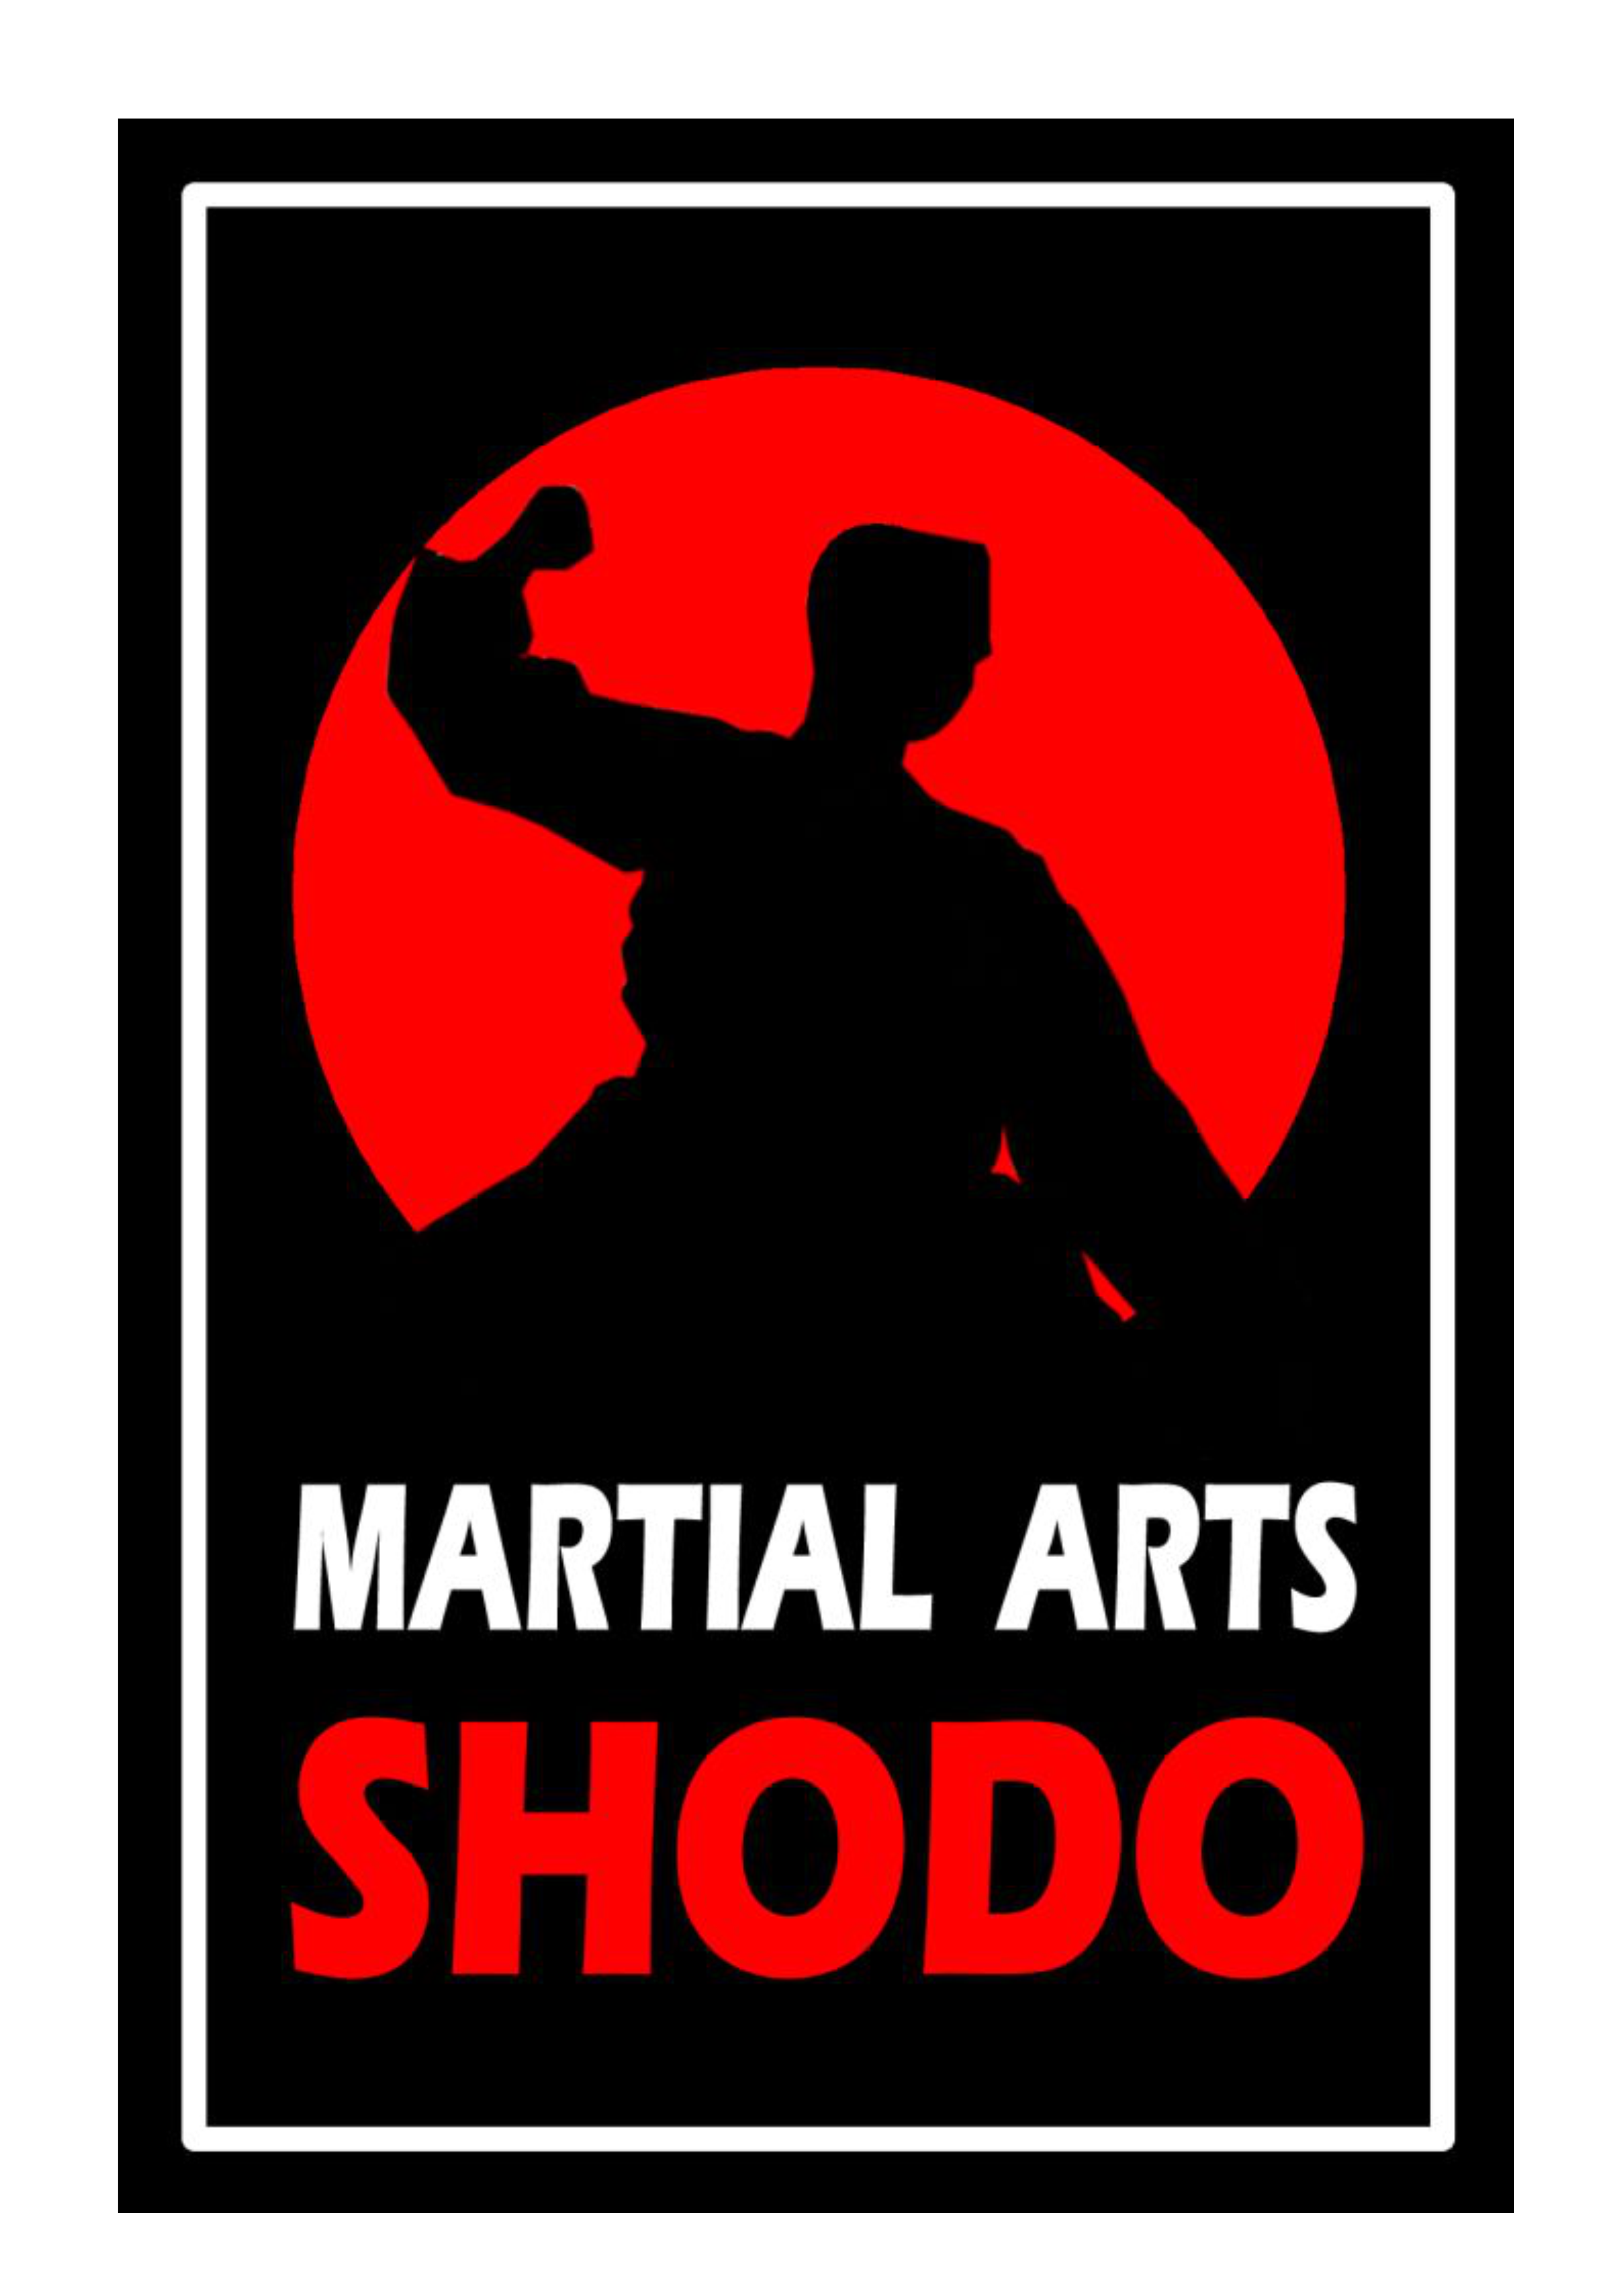 MARTIAL ARTS SHODO